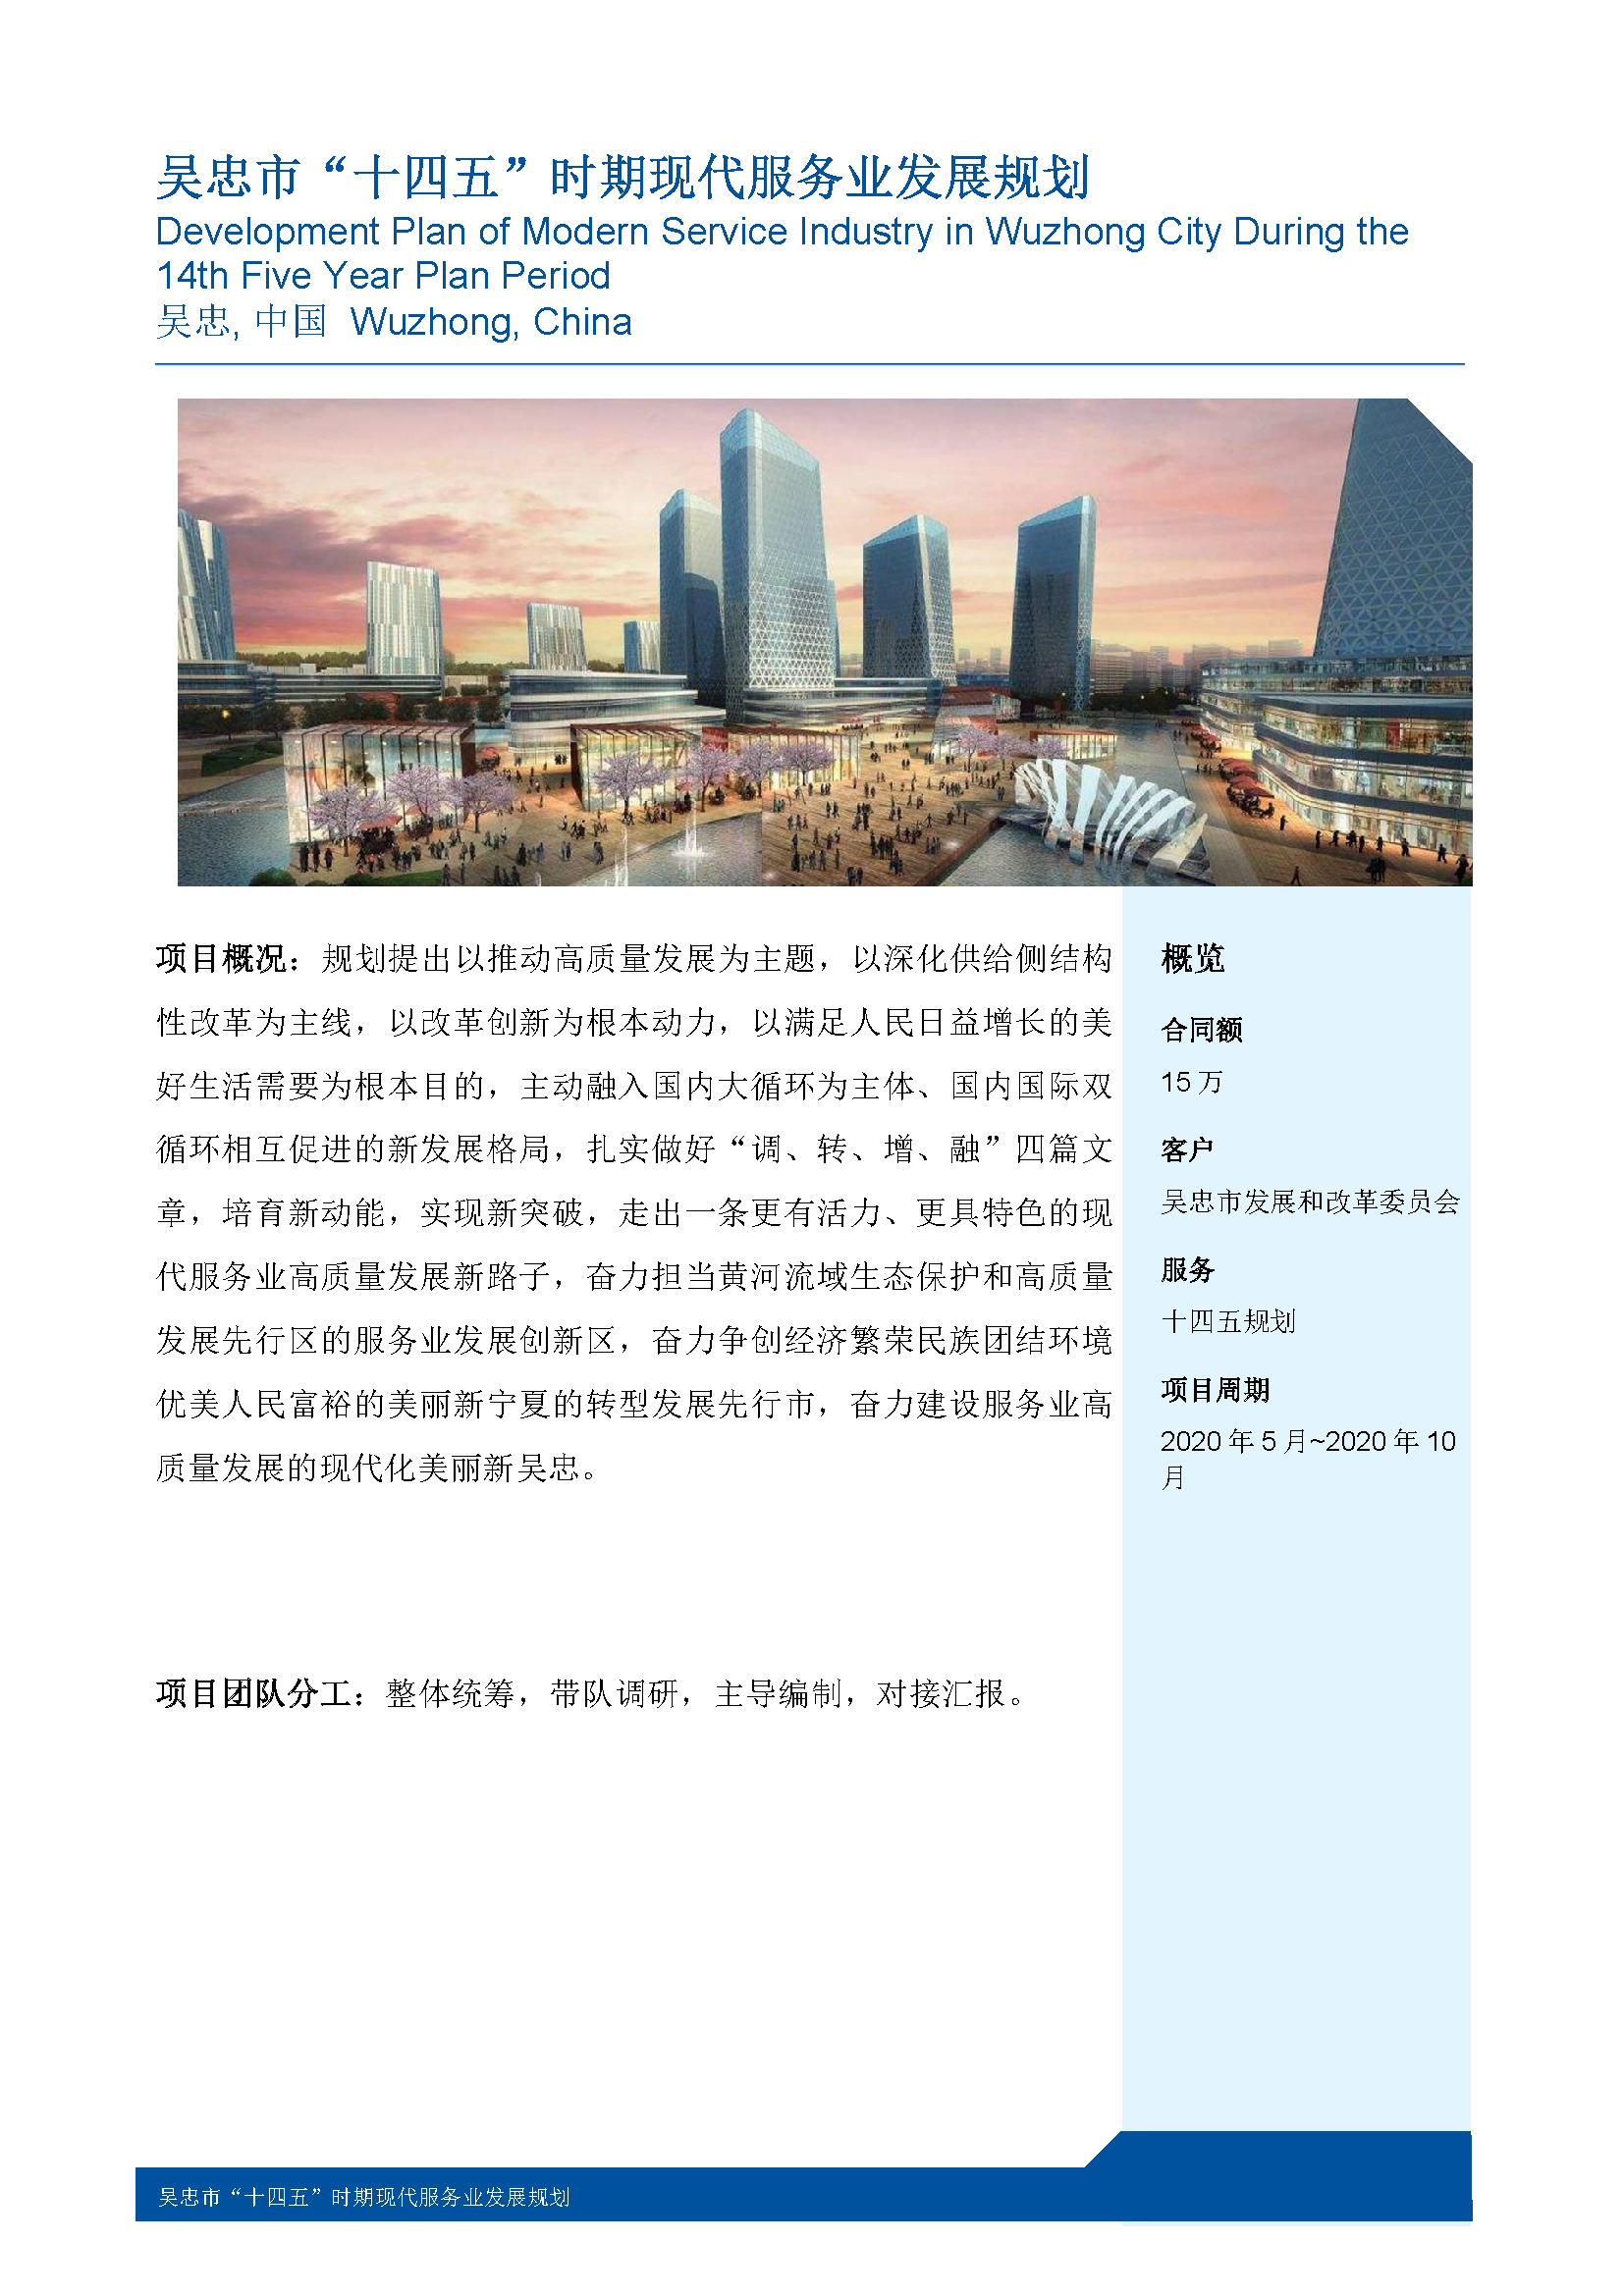 18吴忠市“十四五”时期现代服务业发展规划.png